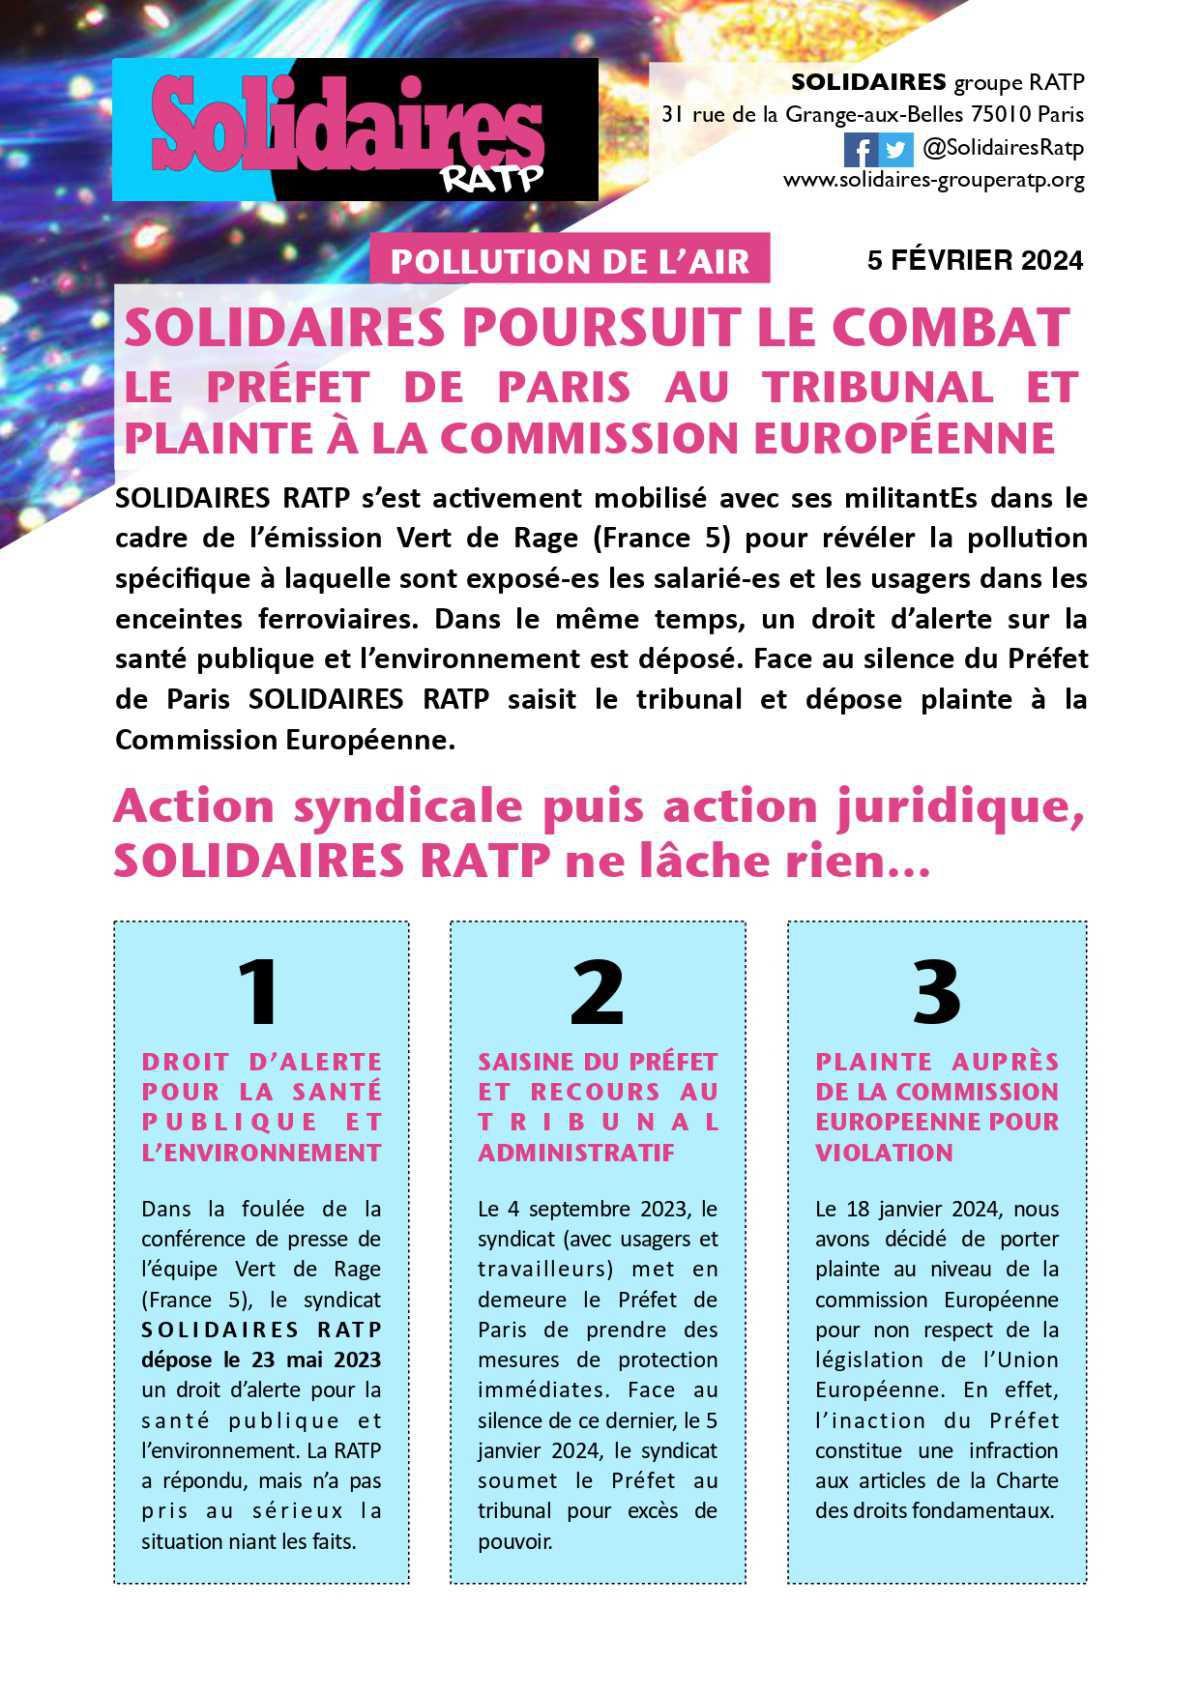 Solidaires RATP // Pollution de l'air, Solidaires poursuit le combat 